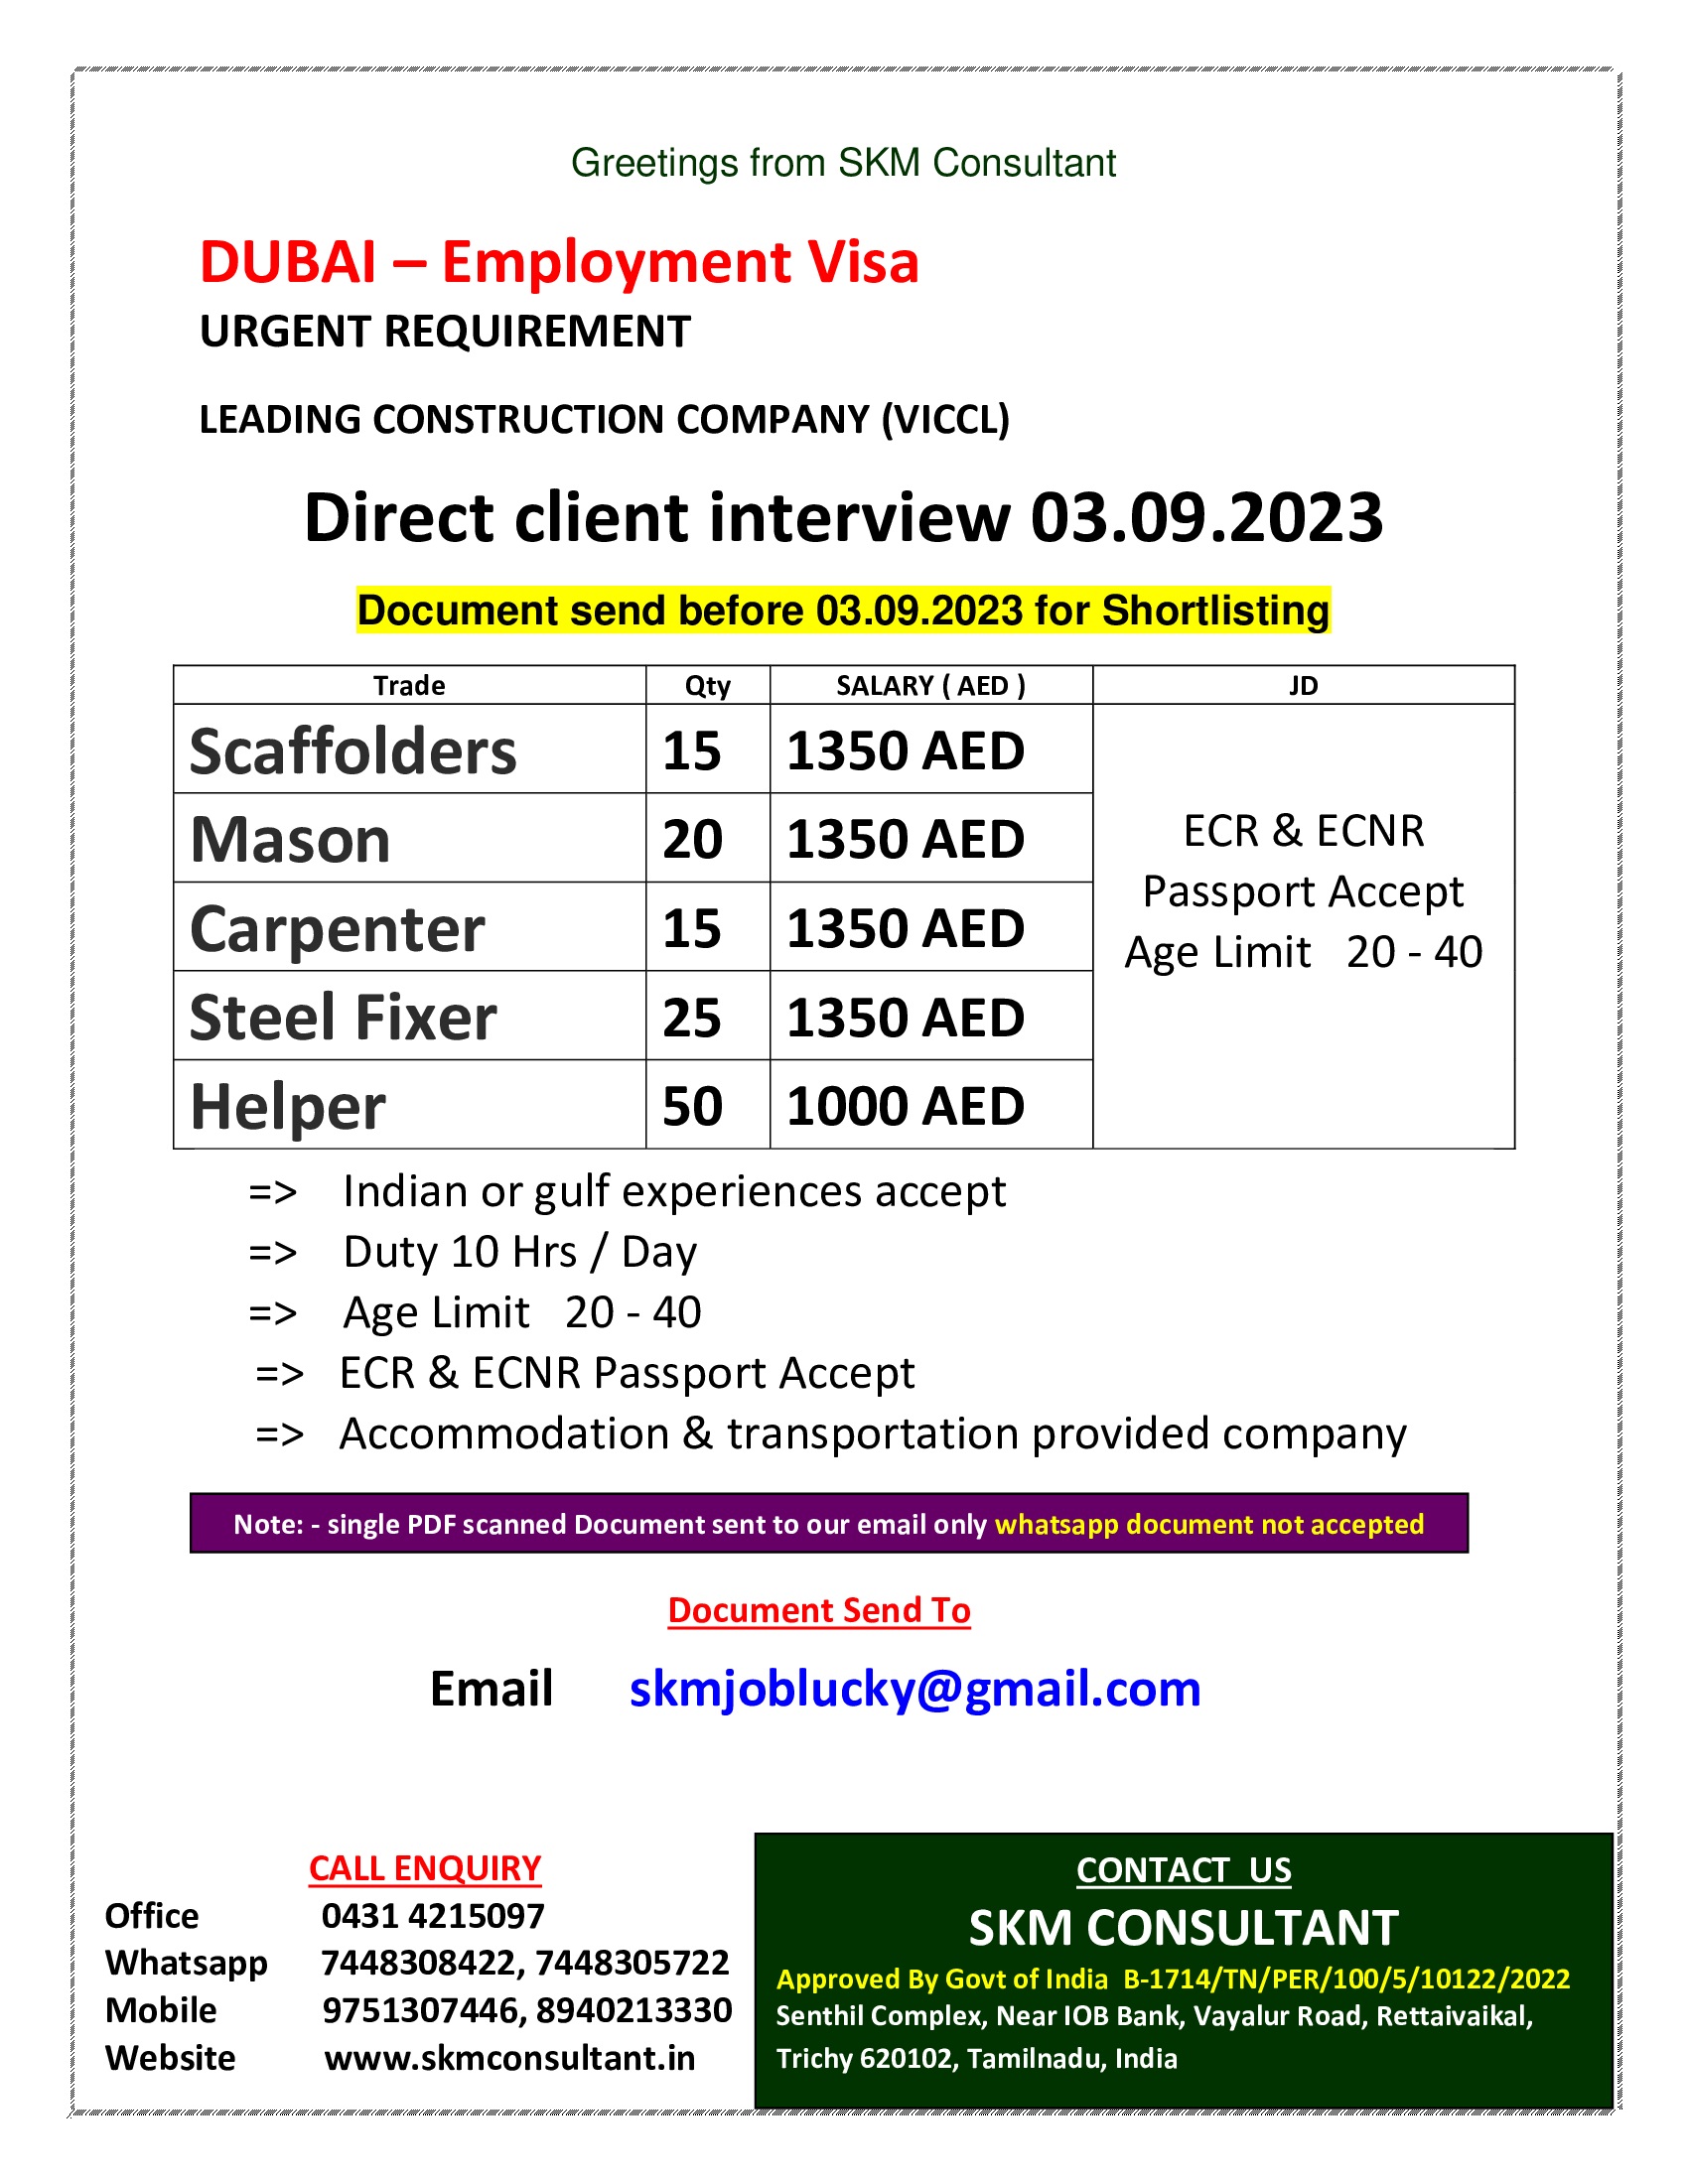 DUBAI CLIENT INTERVIEW 03.09.2023 Copy